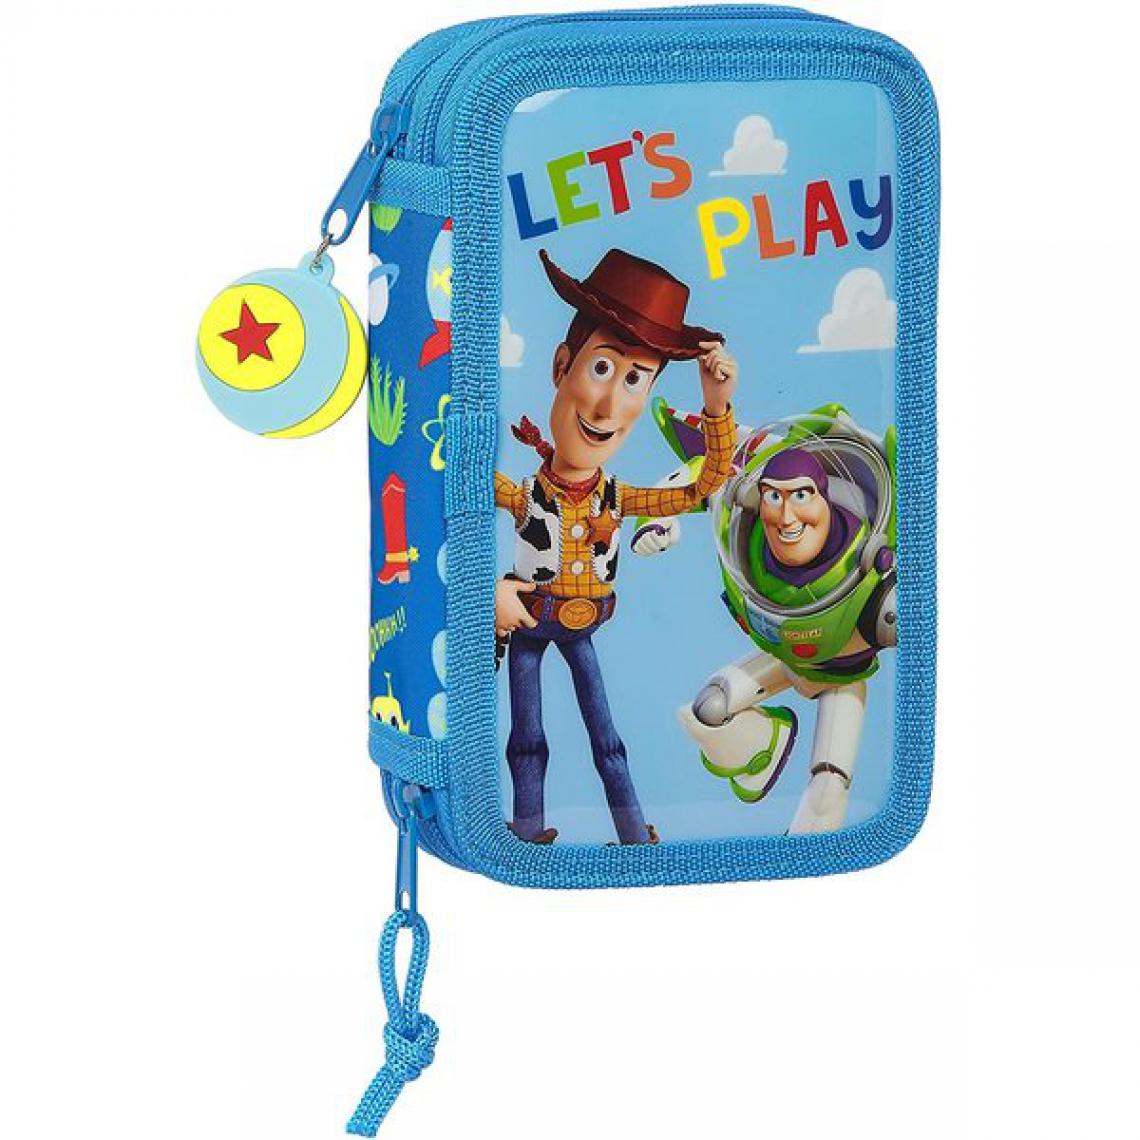 Toy Story - Pochette crayons Double Toy Story Let's Play Bleu (28 pcs) - Accessoires Bureau